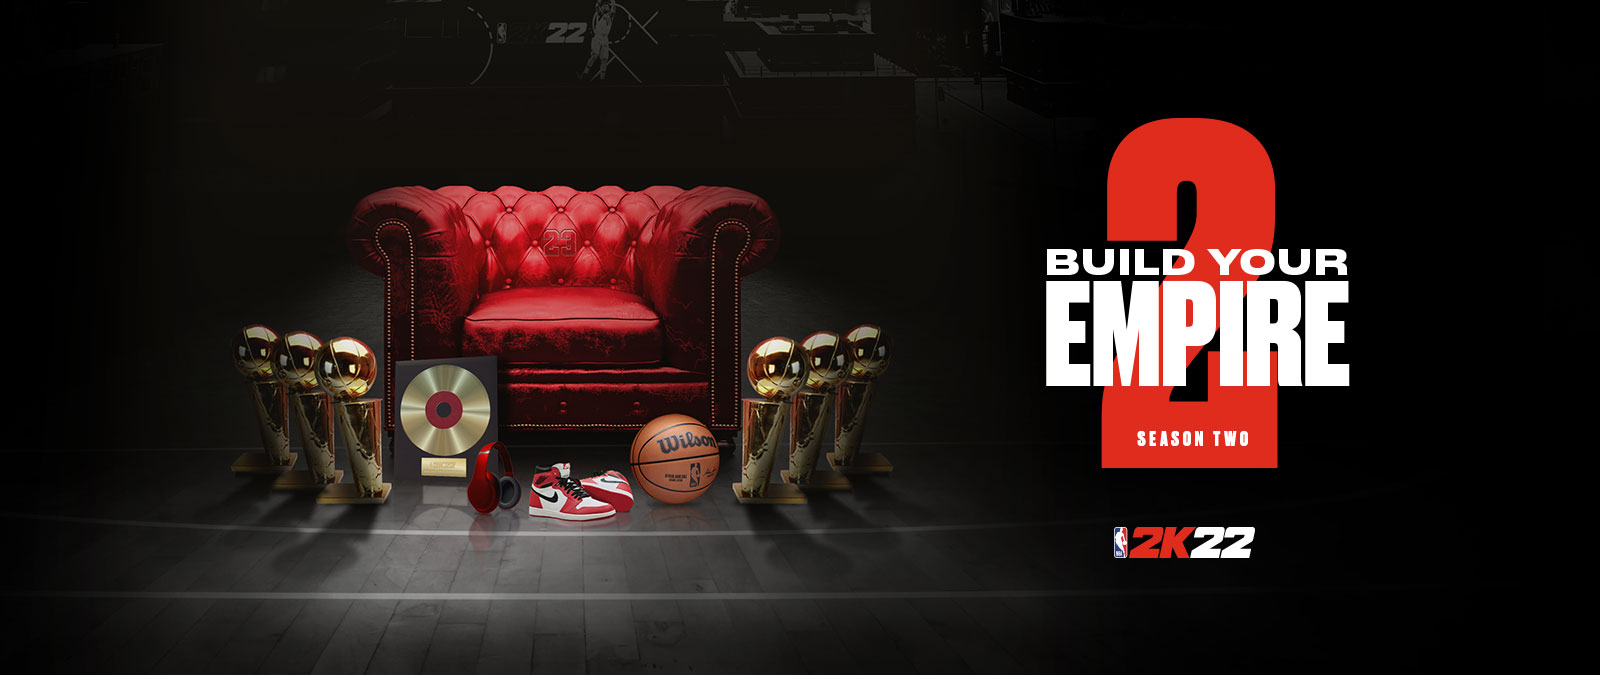 Baue dein Imperium in Season 2 von NBA 2k22 auf: Mehrere Trophäen stehen um einen roten Ledersessel herum.